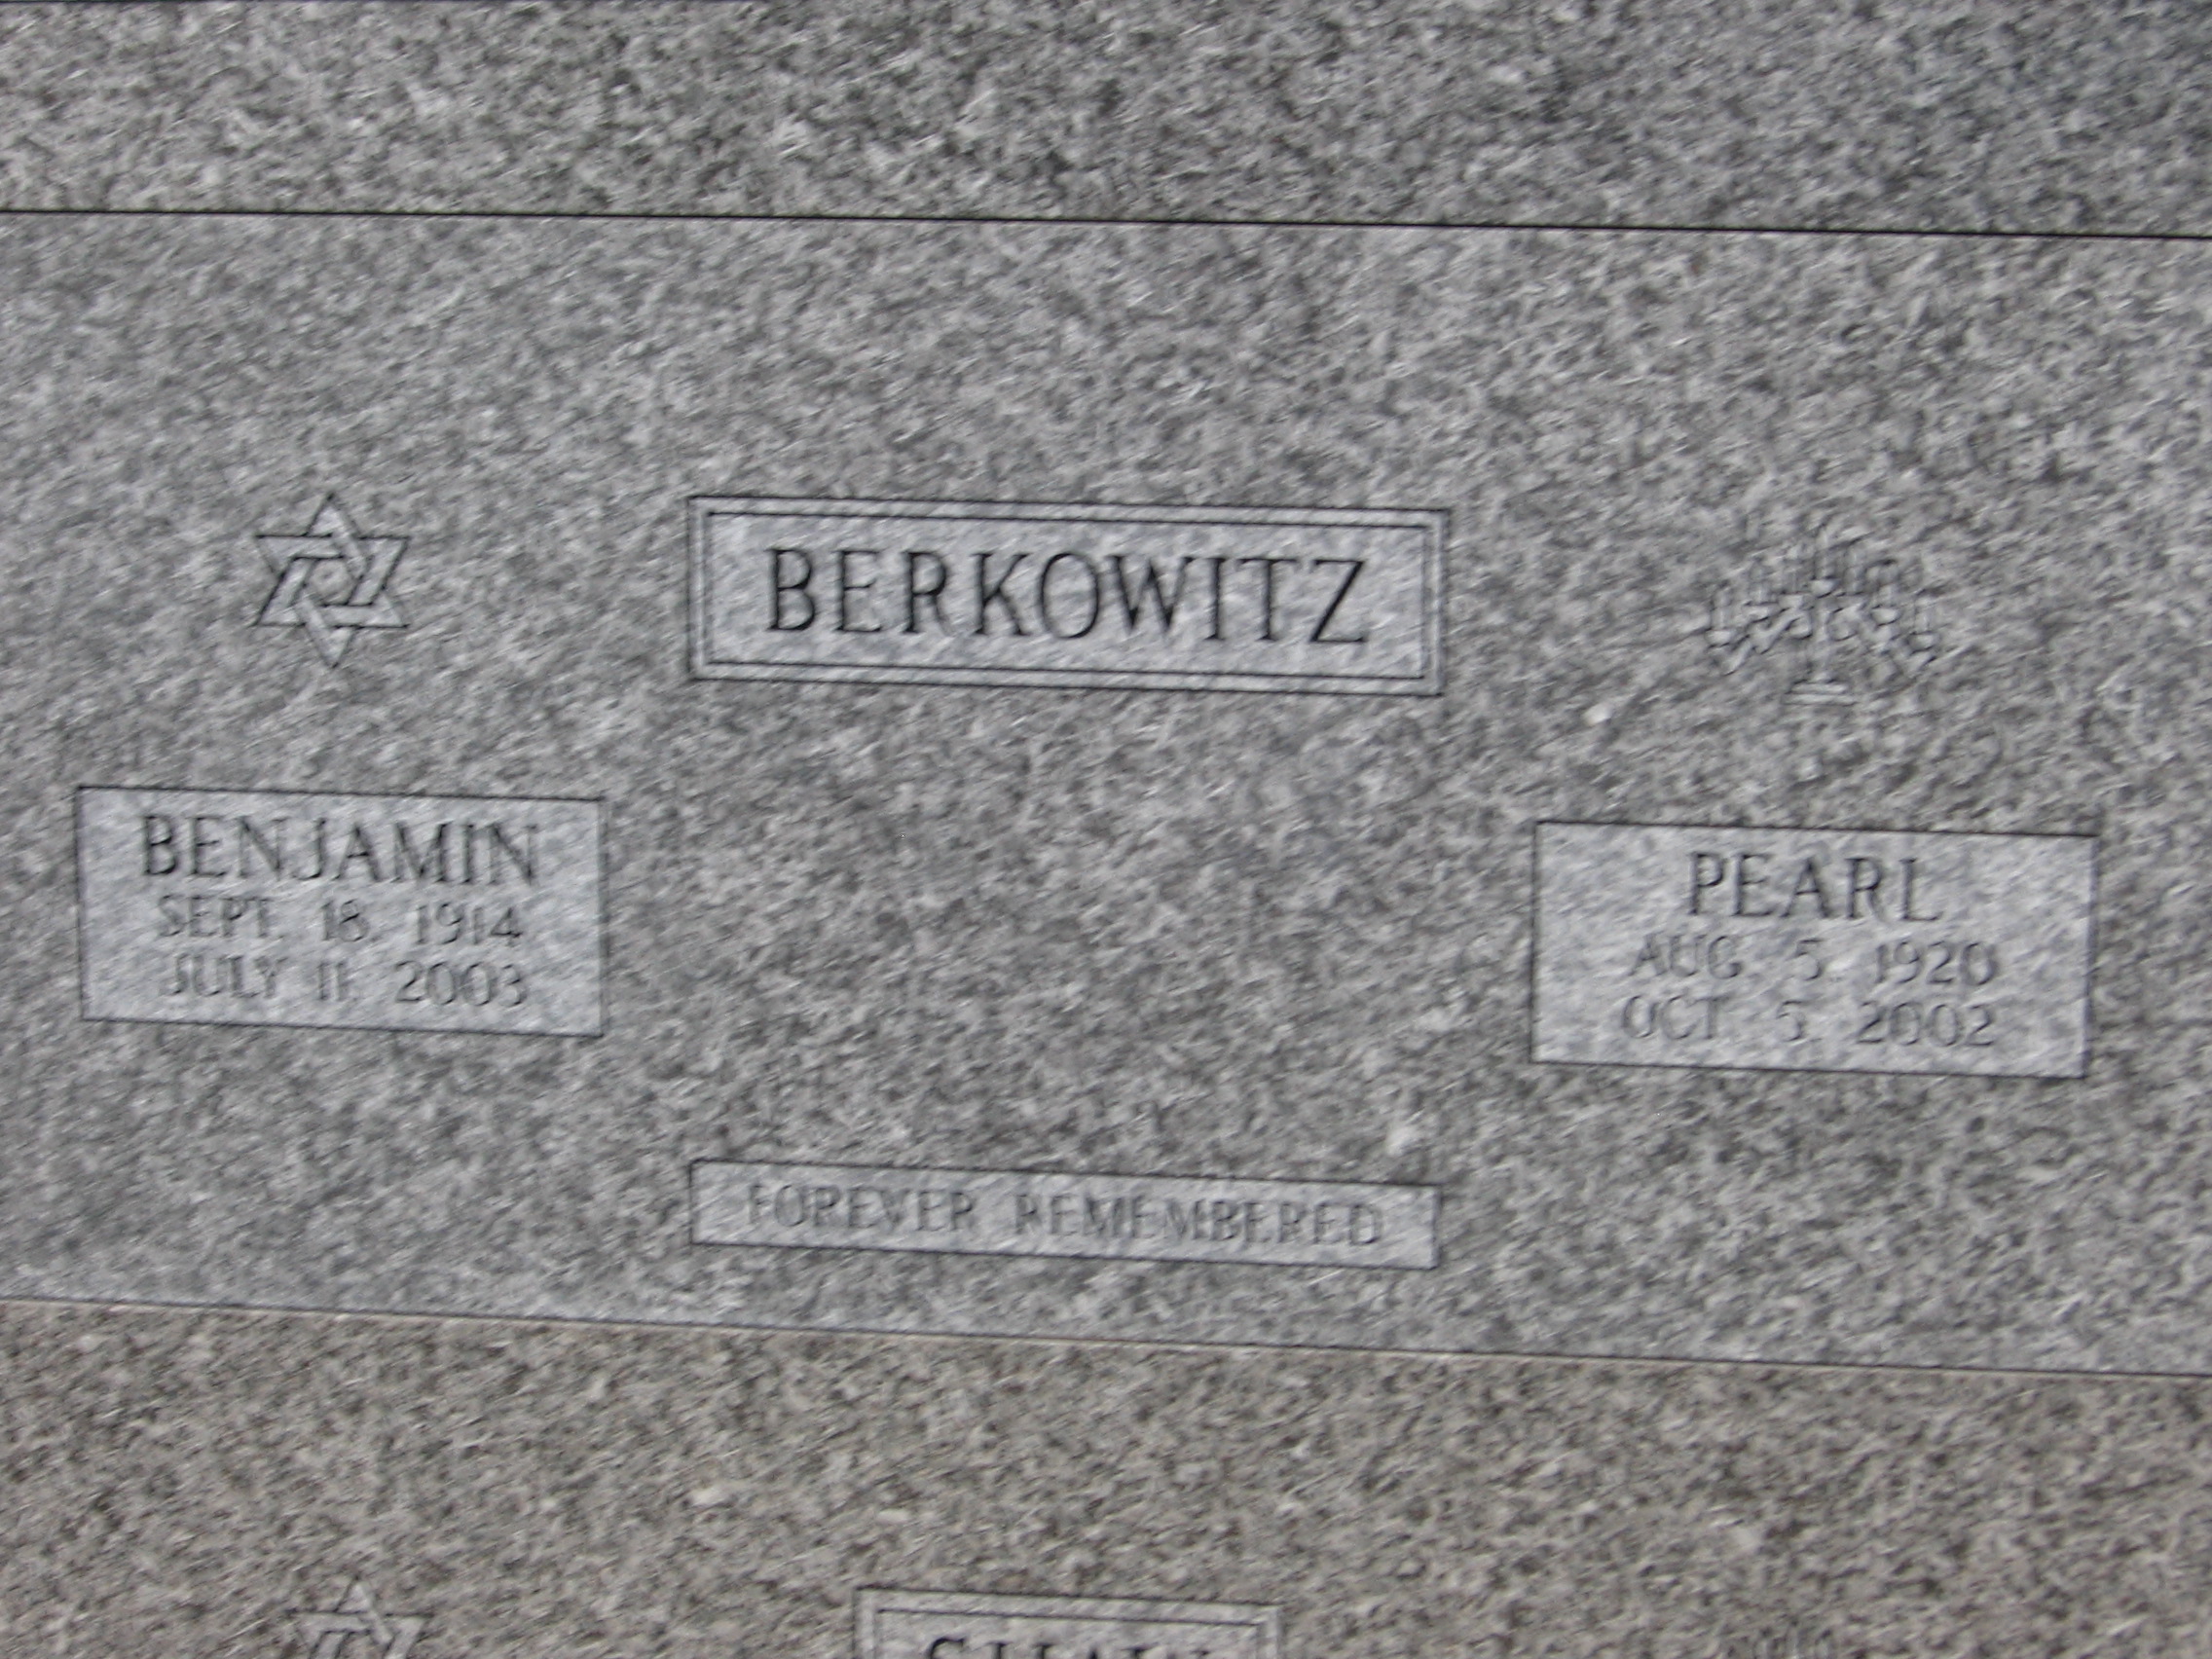 Pearl Berkowitz